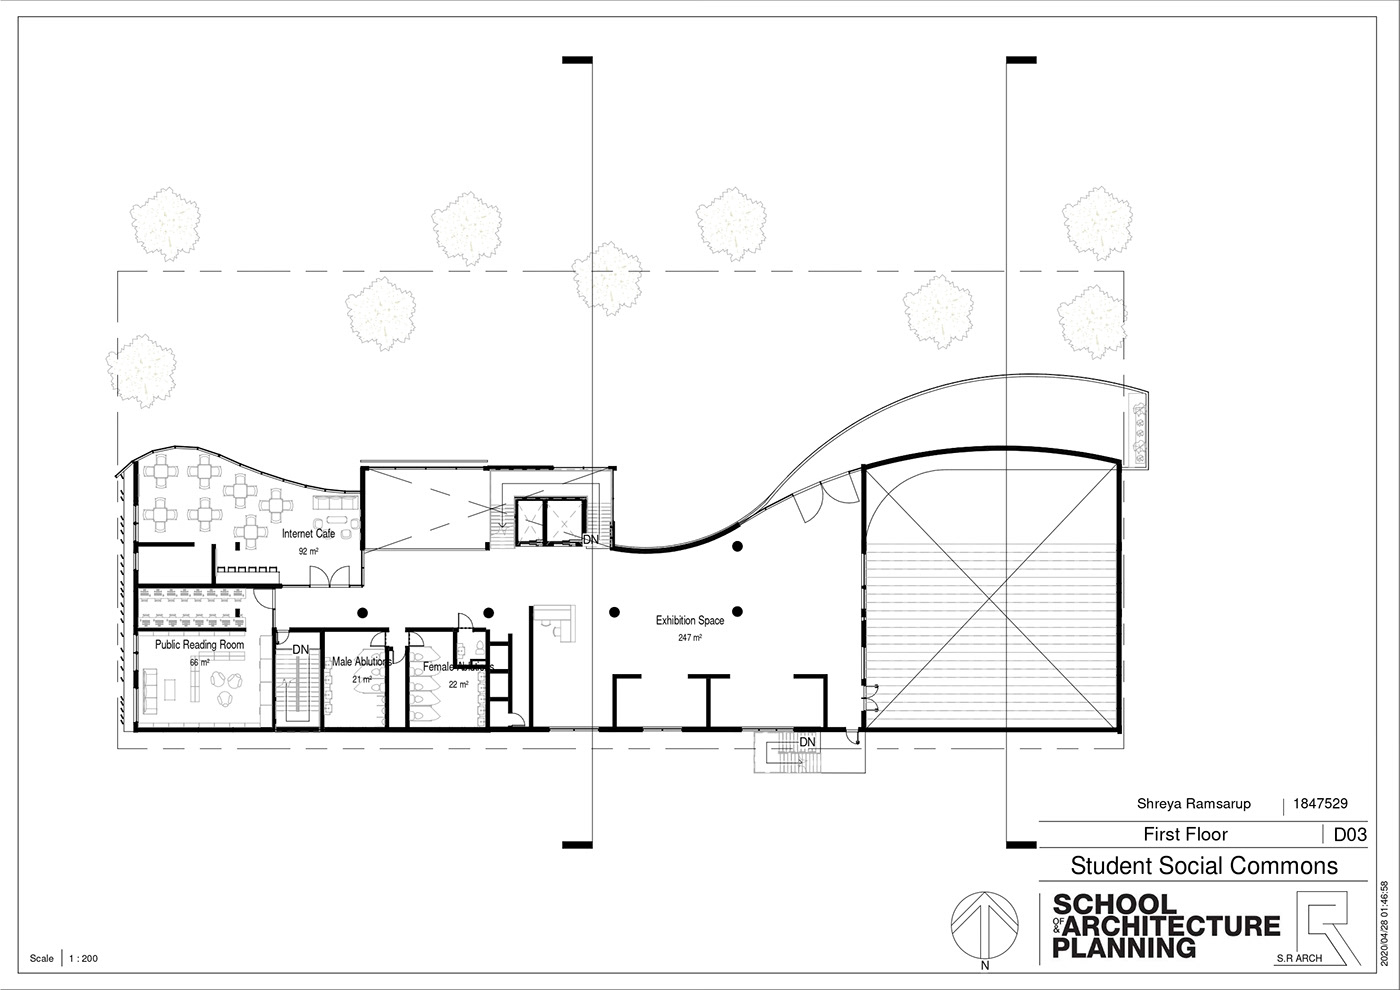 brick concrete curves design educational louvers Office Space public space restaurant student commons